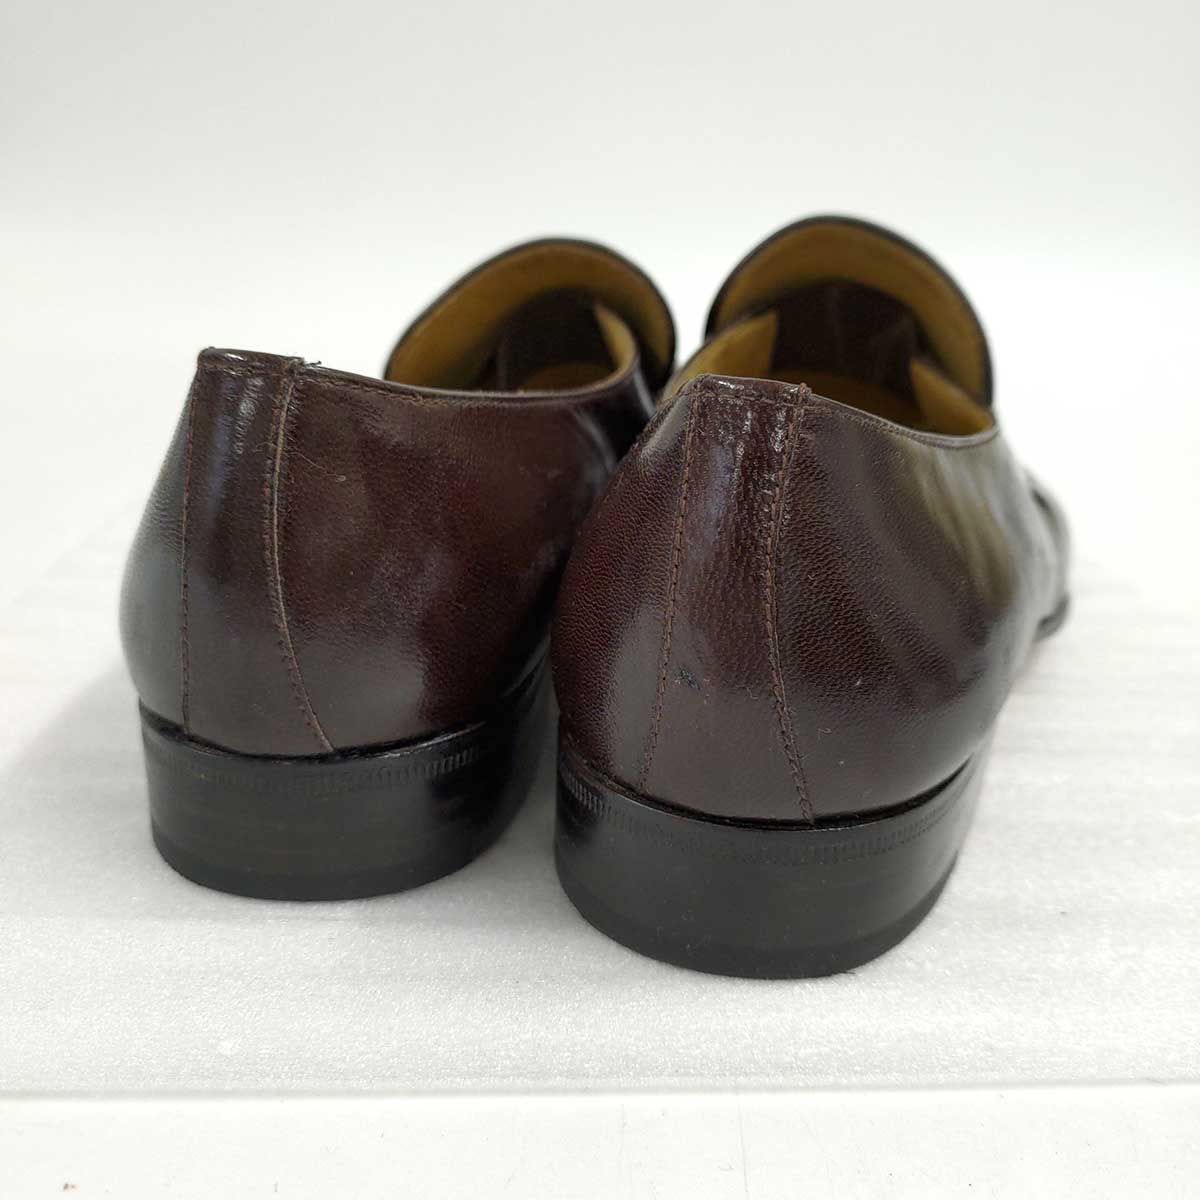 モレスキー MORESCHI ローファー クロコダイル ワニ革 シューズ 靴 メンズ イタリア製 6 1/2(24.5cm相当) ブラック